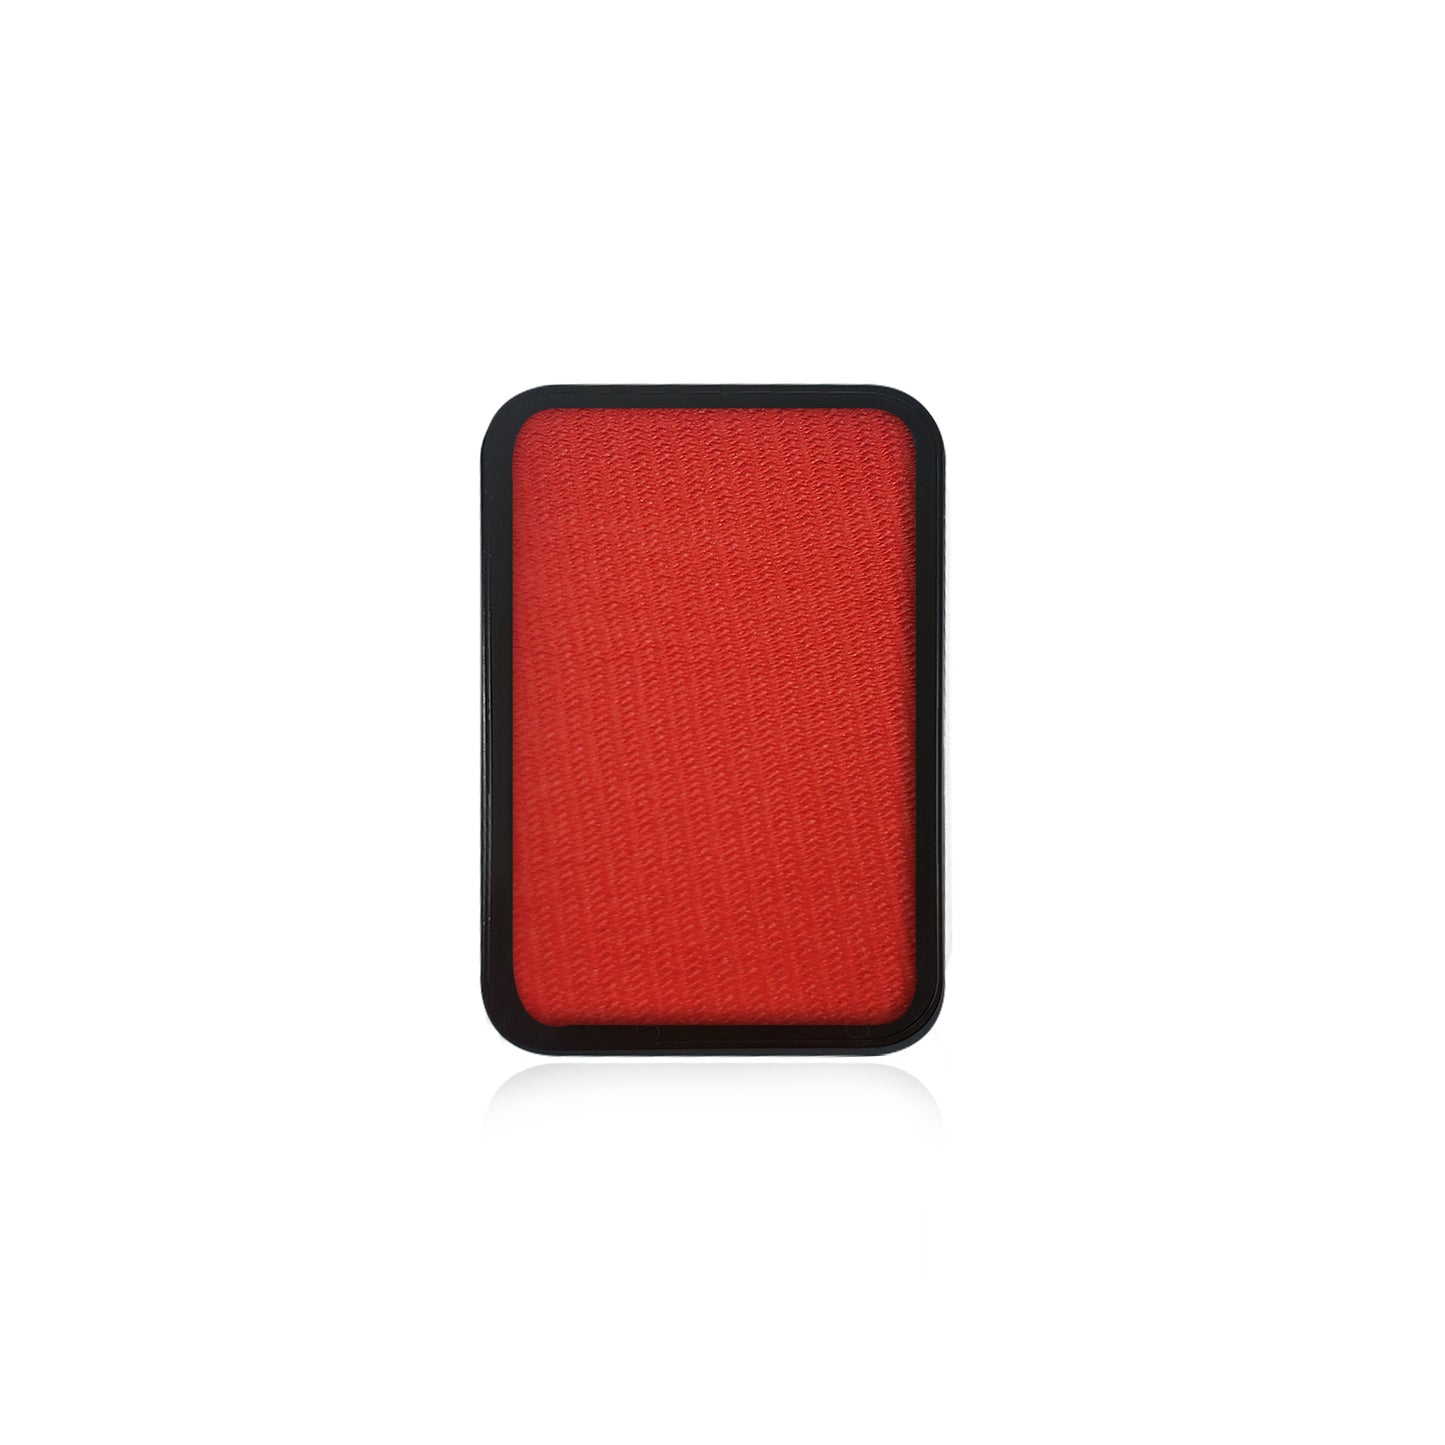 Kraze FX Face Paint Refill - Red (10 gm)